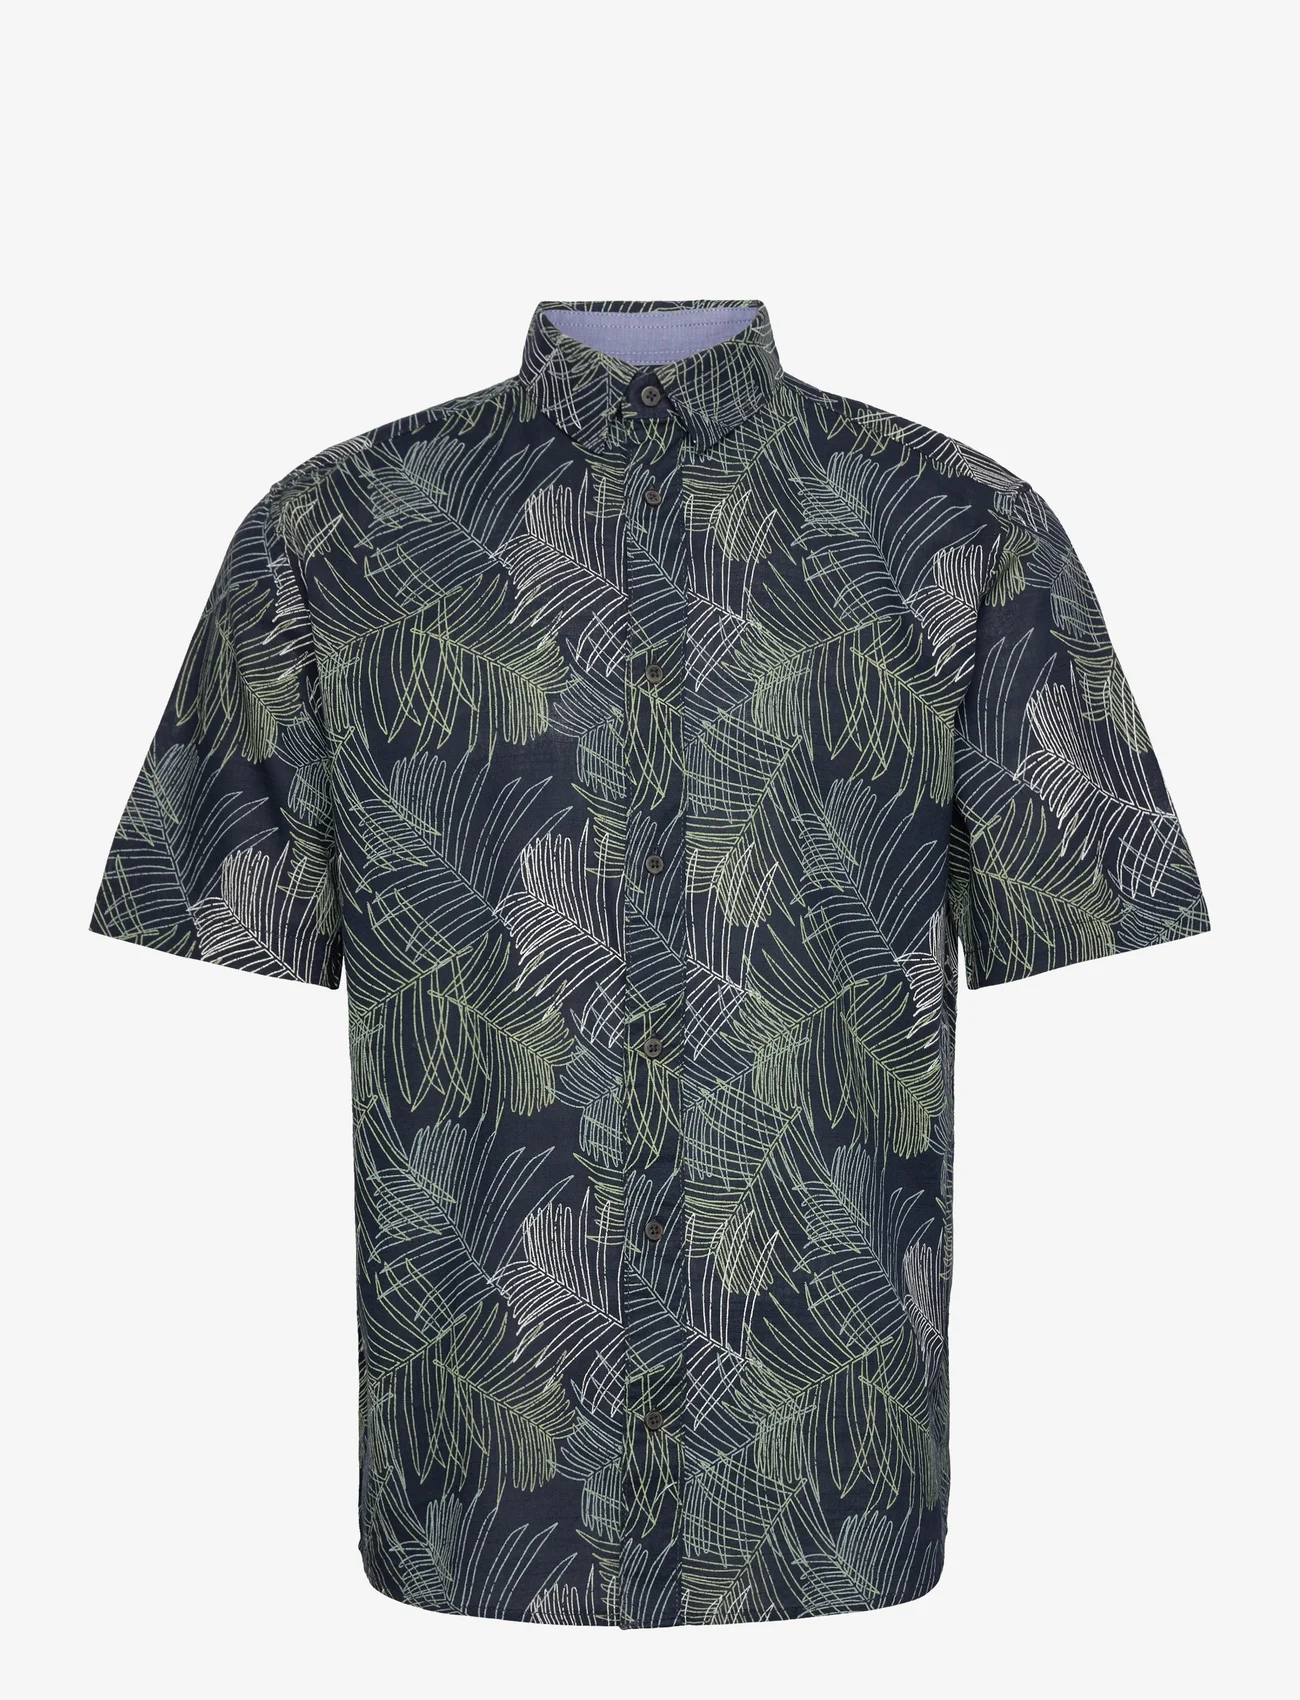 Tom Tailor - comfort printed shirt - short-sleeved shirts - navy multicolor leaf design - 0